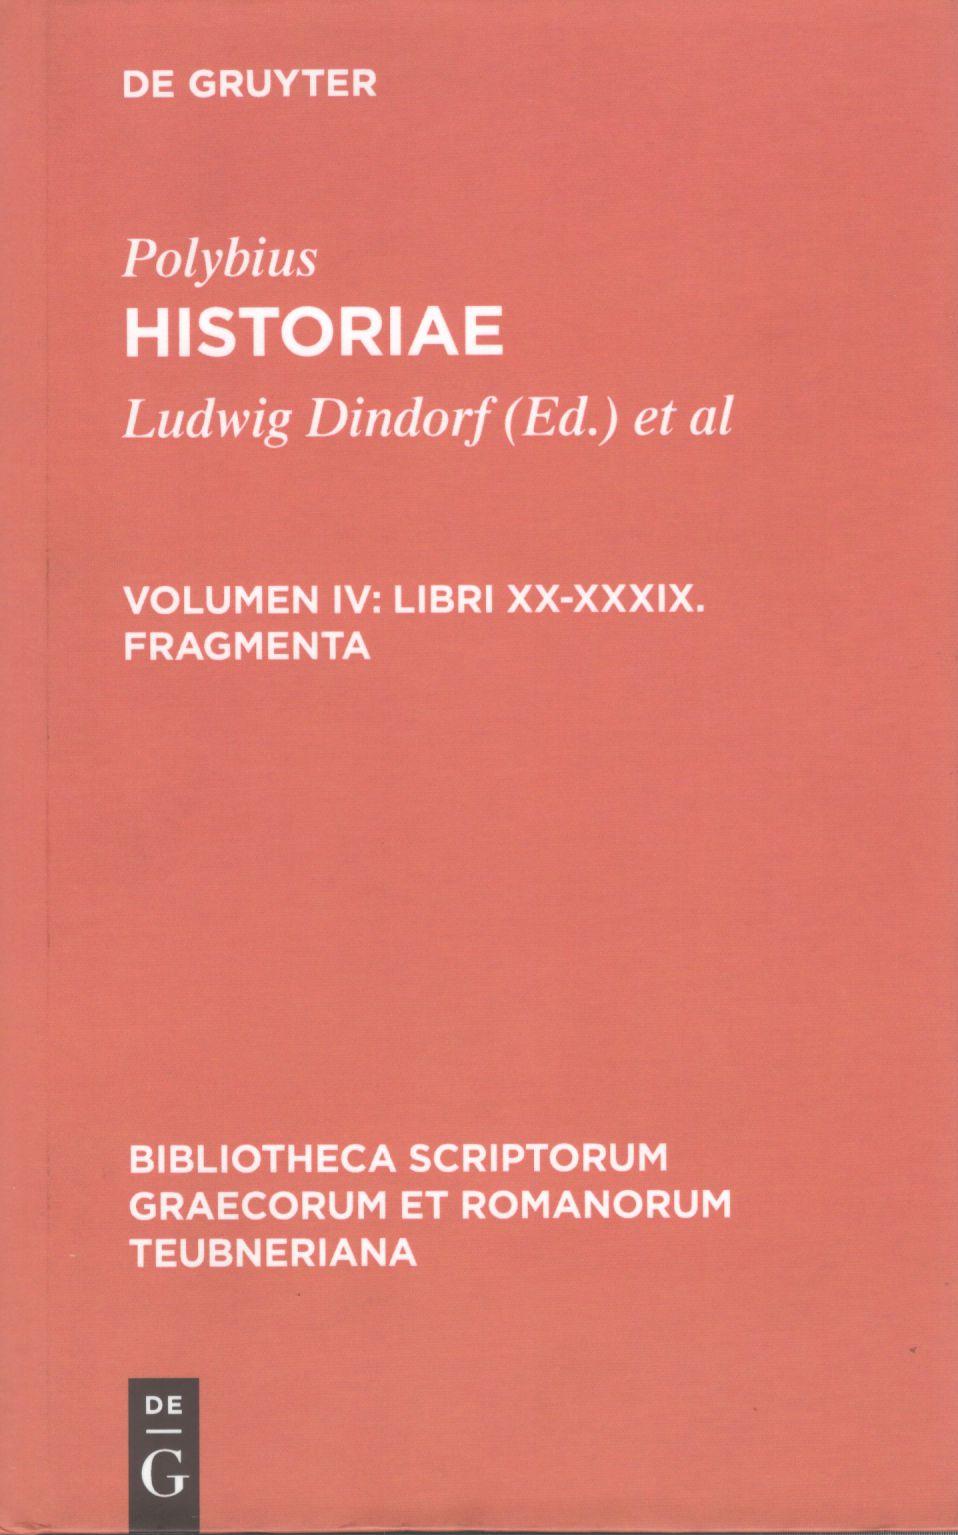 POLYBII HISTORIAE VOLUME IV: LIBRI XX-XXXIX FRAGMENTA